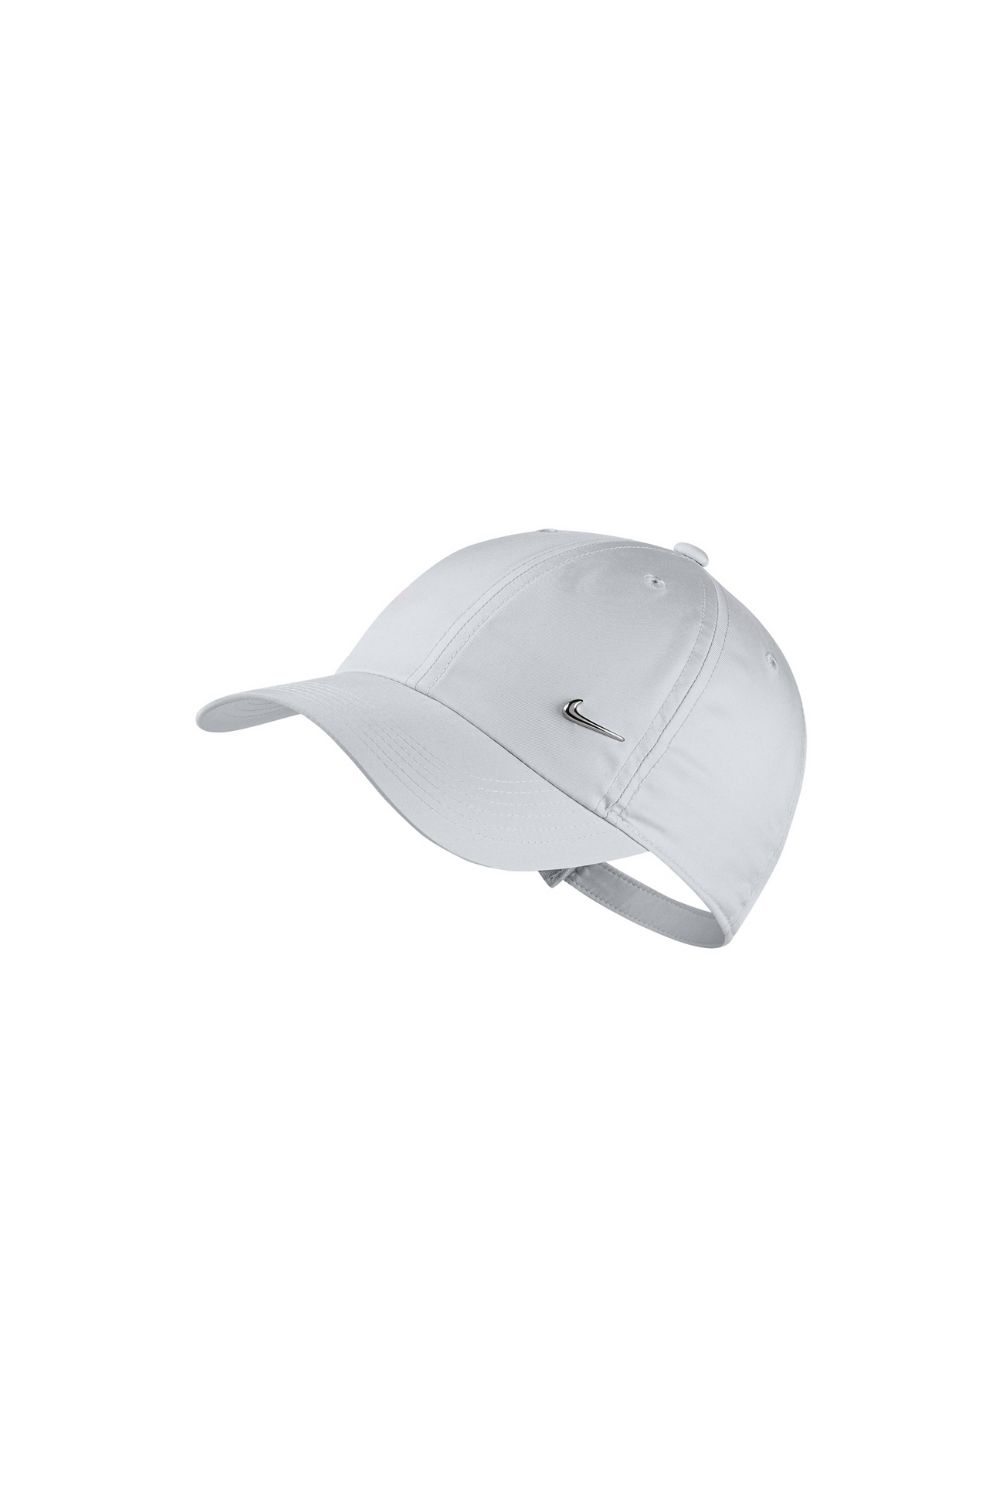 Παιδικά/Boys/Αξεσουάρ/Καπέλα NIKE - Παιδικό καπέλο NIKE Y H86 CAP METAL SWOOSH λευκό